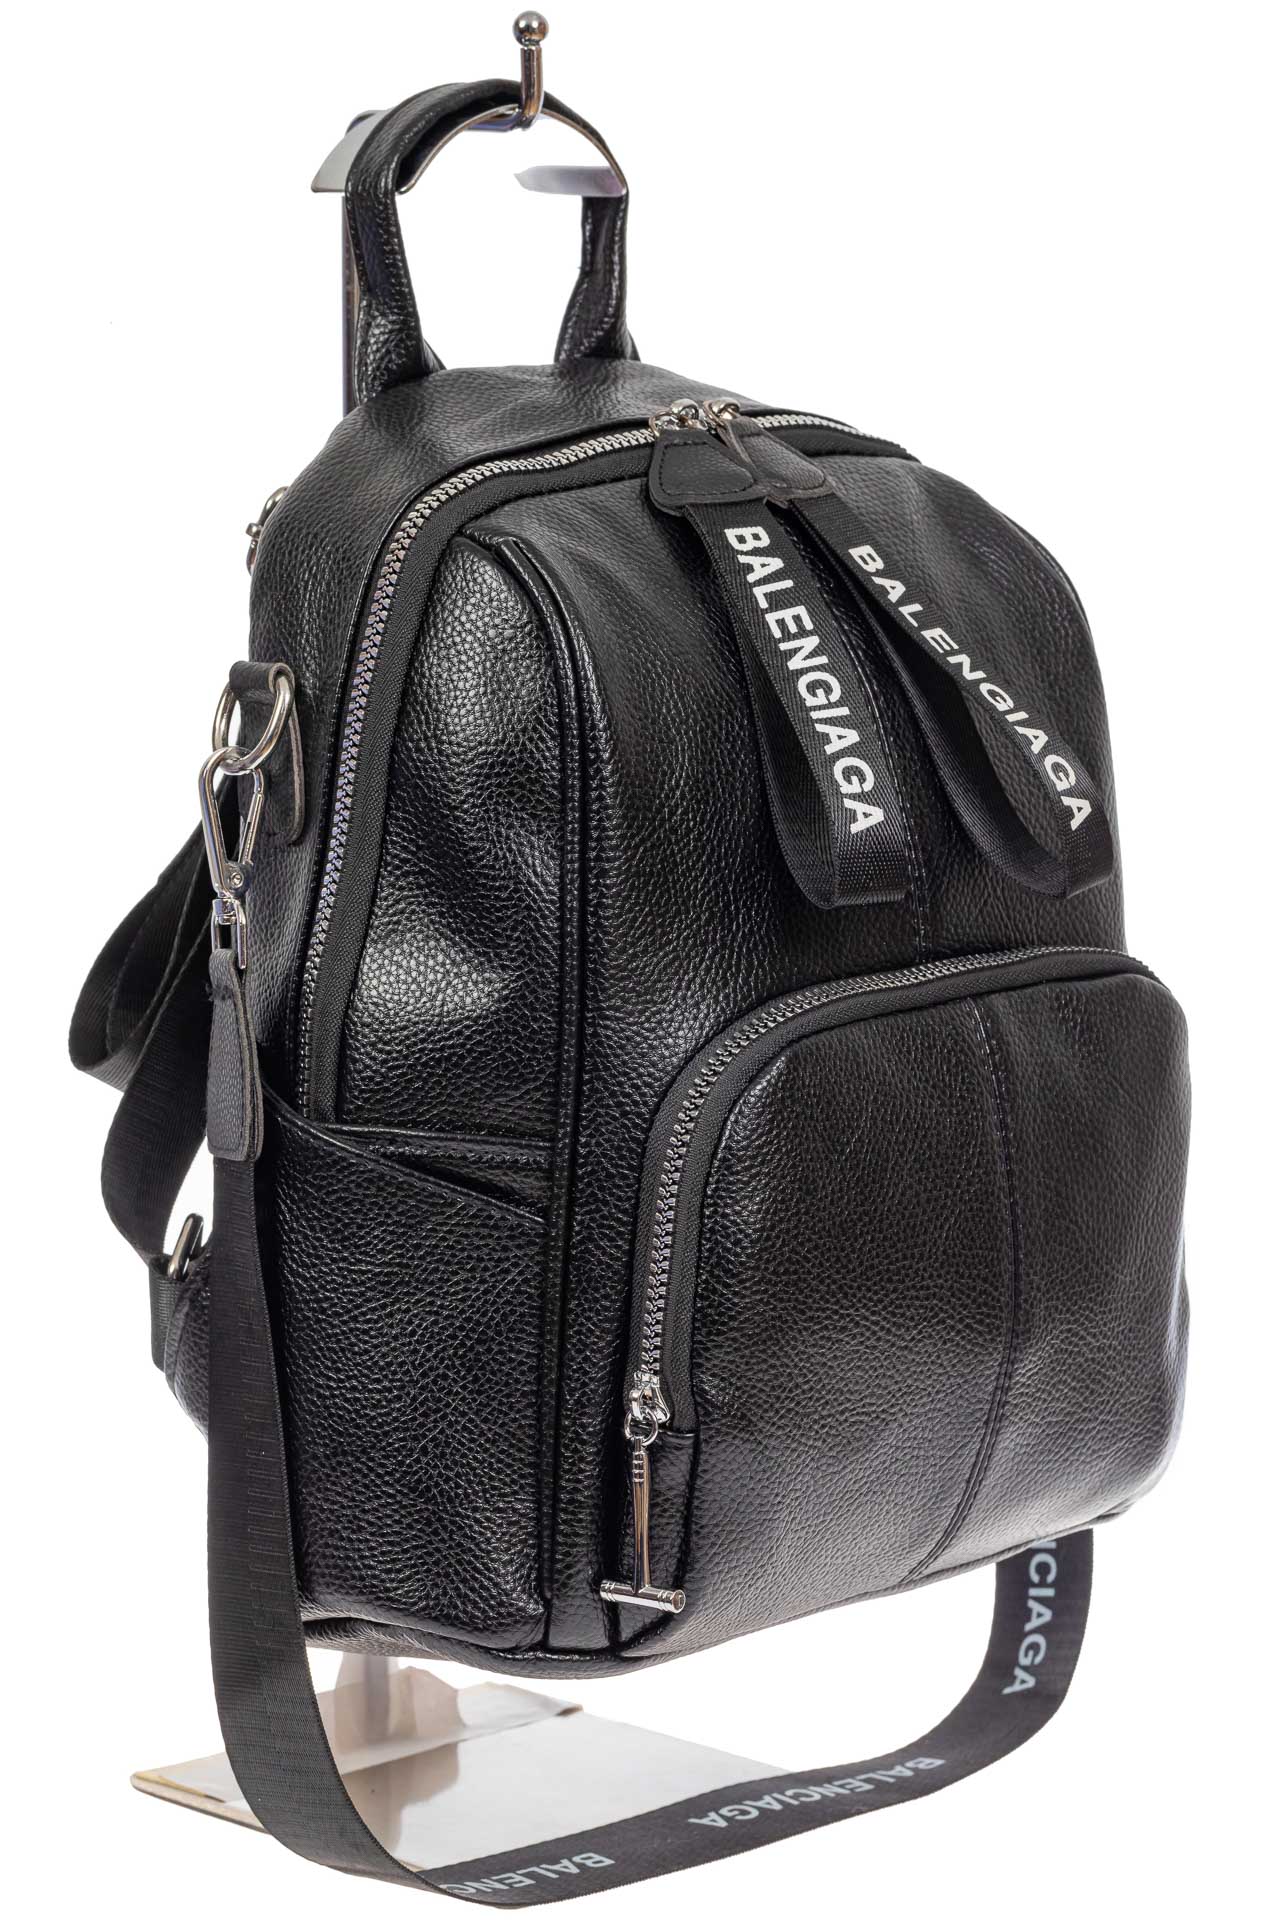 Женский рюкзак-трансформер из фактурной искусственной кожи, цвет чёрный